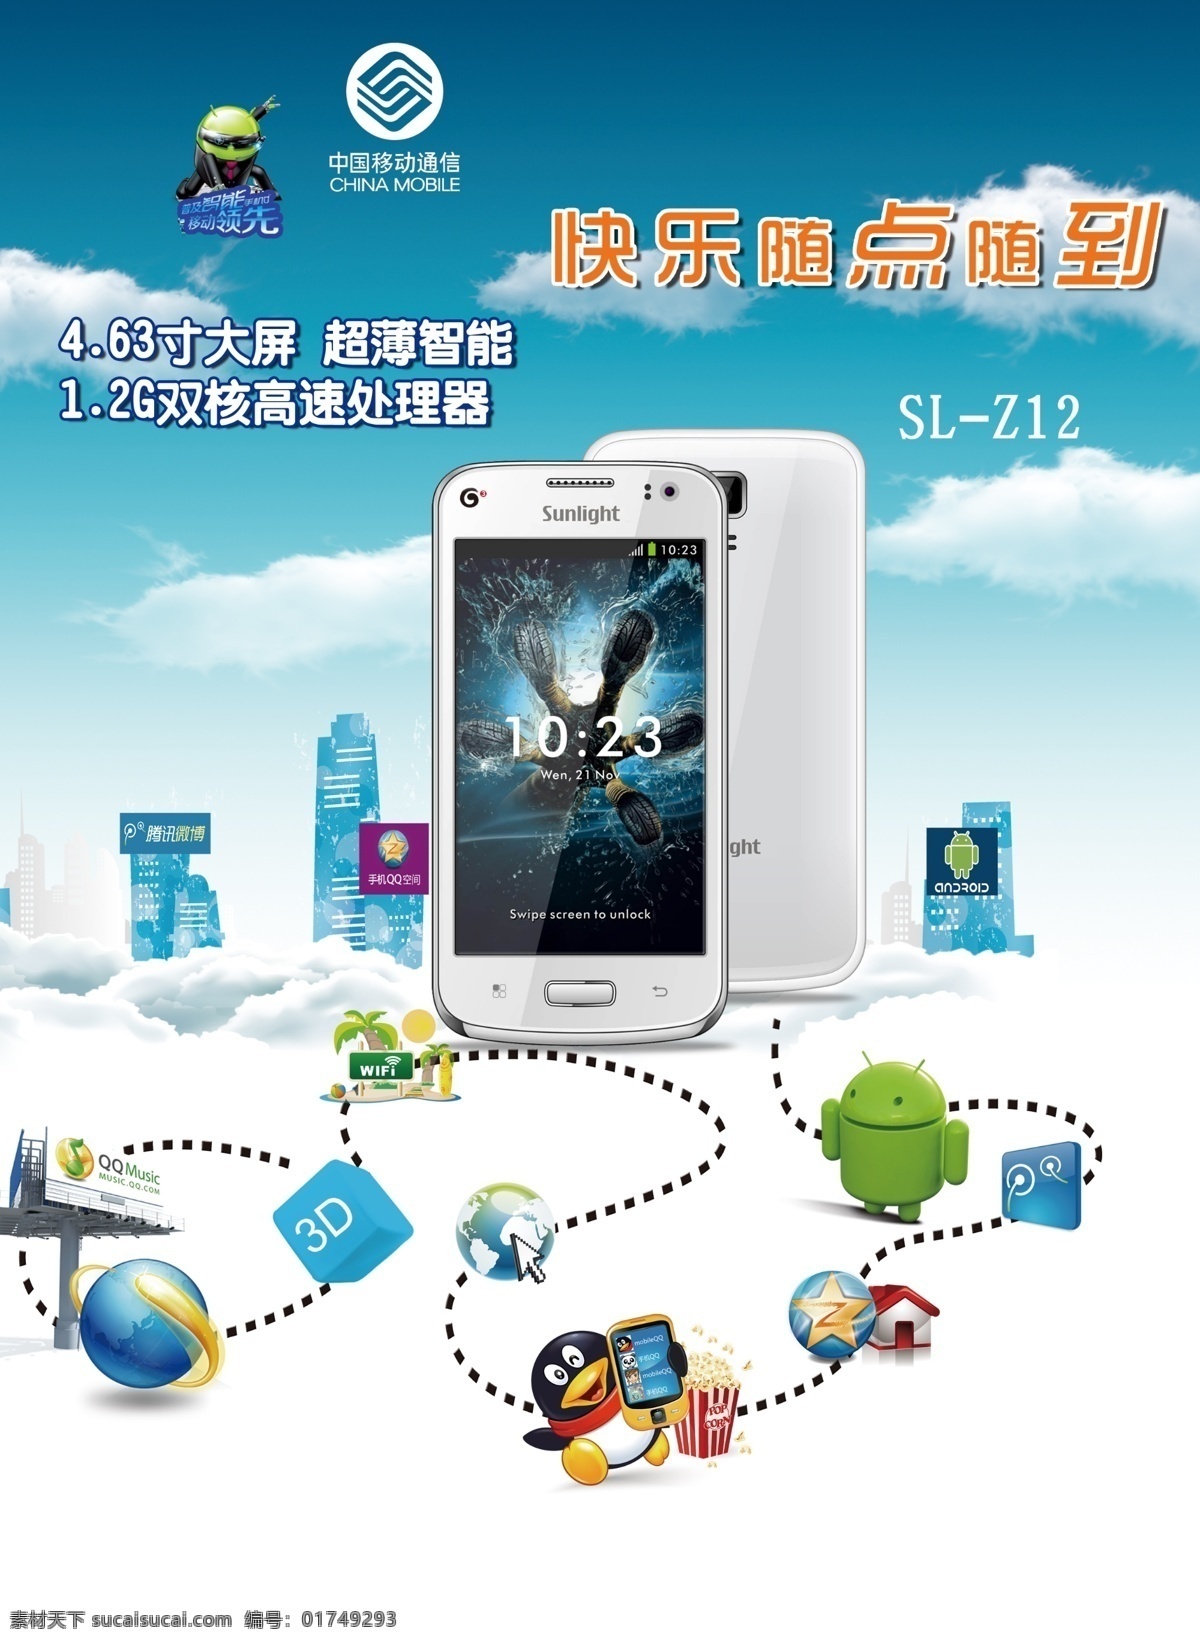 中国移动 手机 促销 宣传海报 宣传 海报